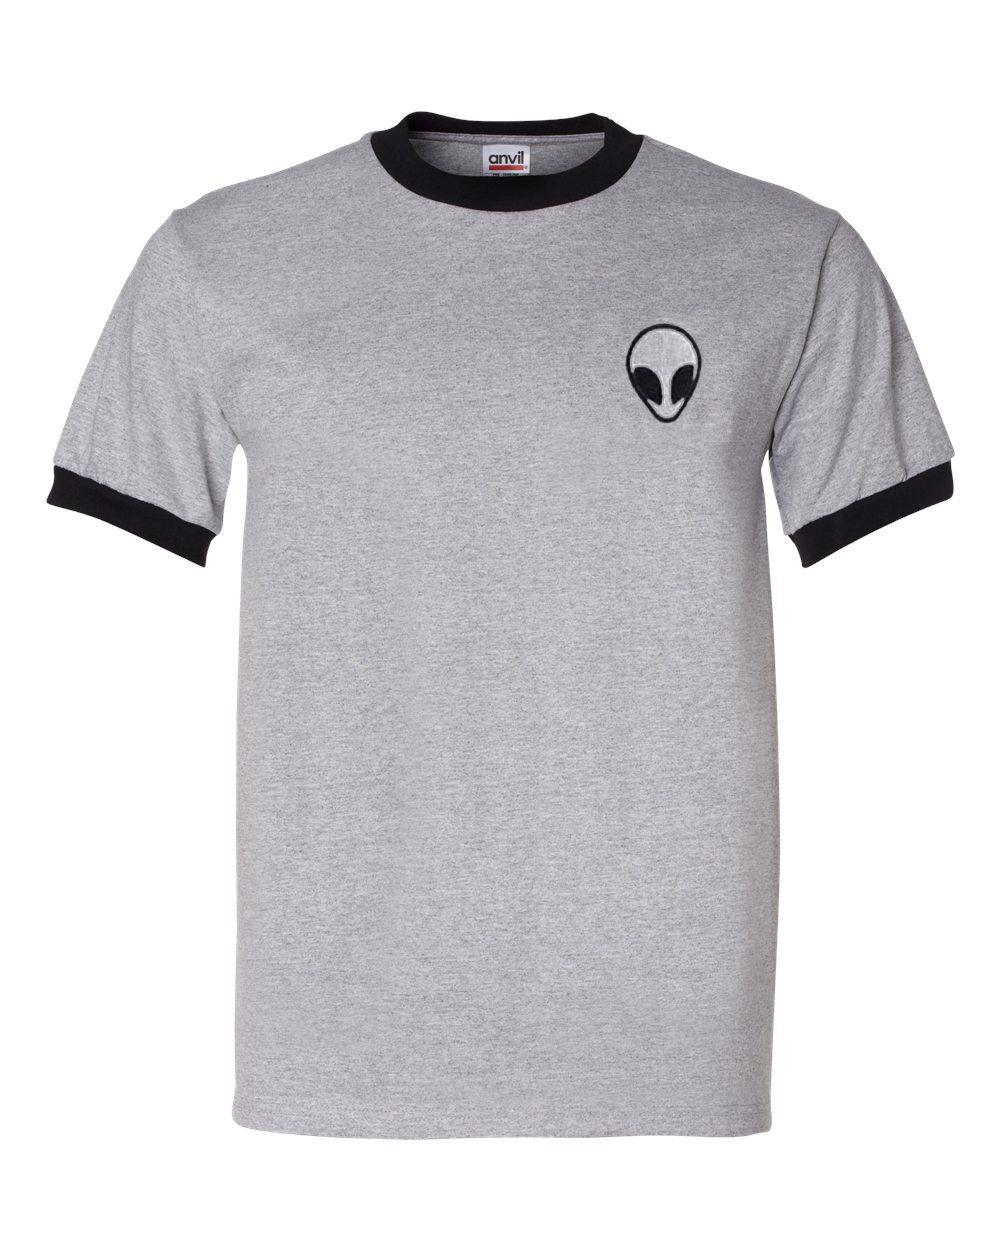 Grey Alien Logo - Alien Logo Grey Ringer T Shirt